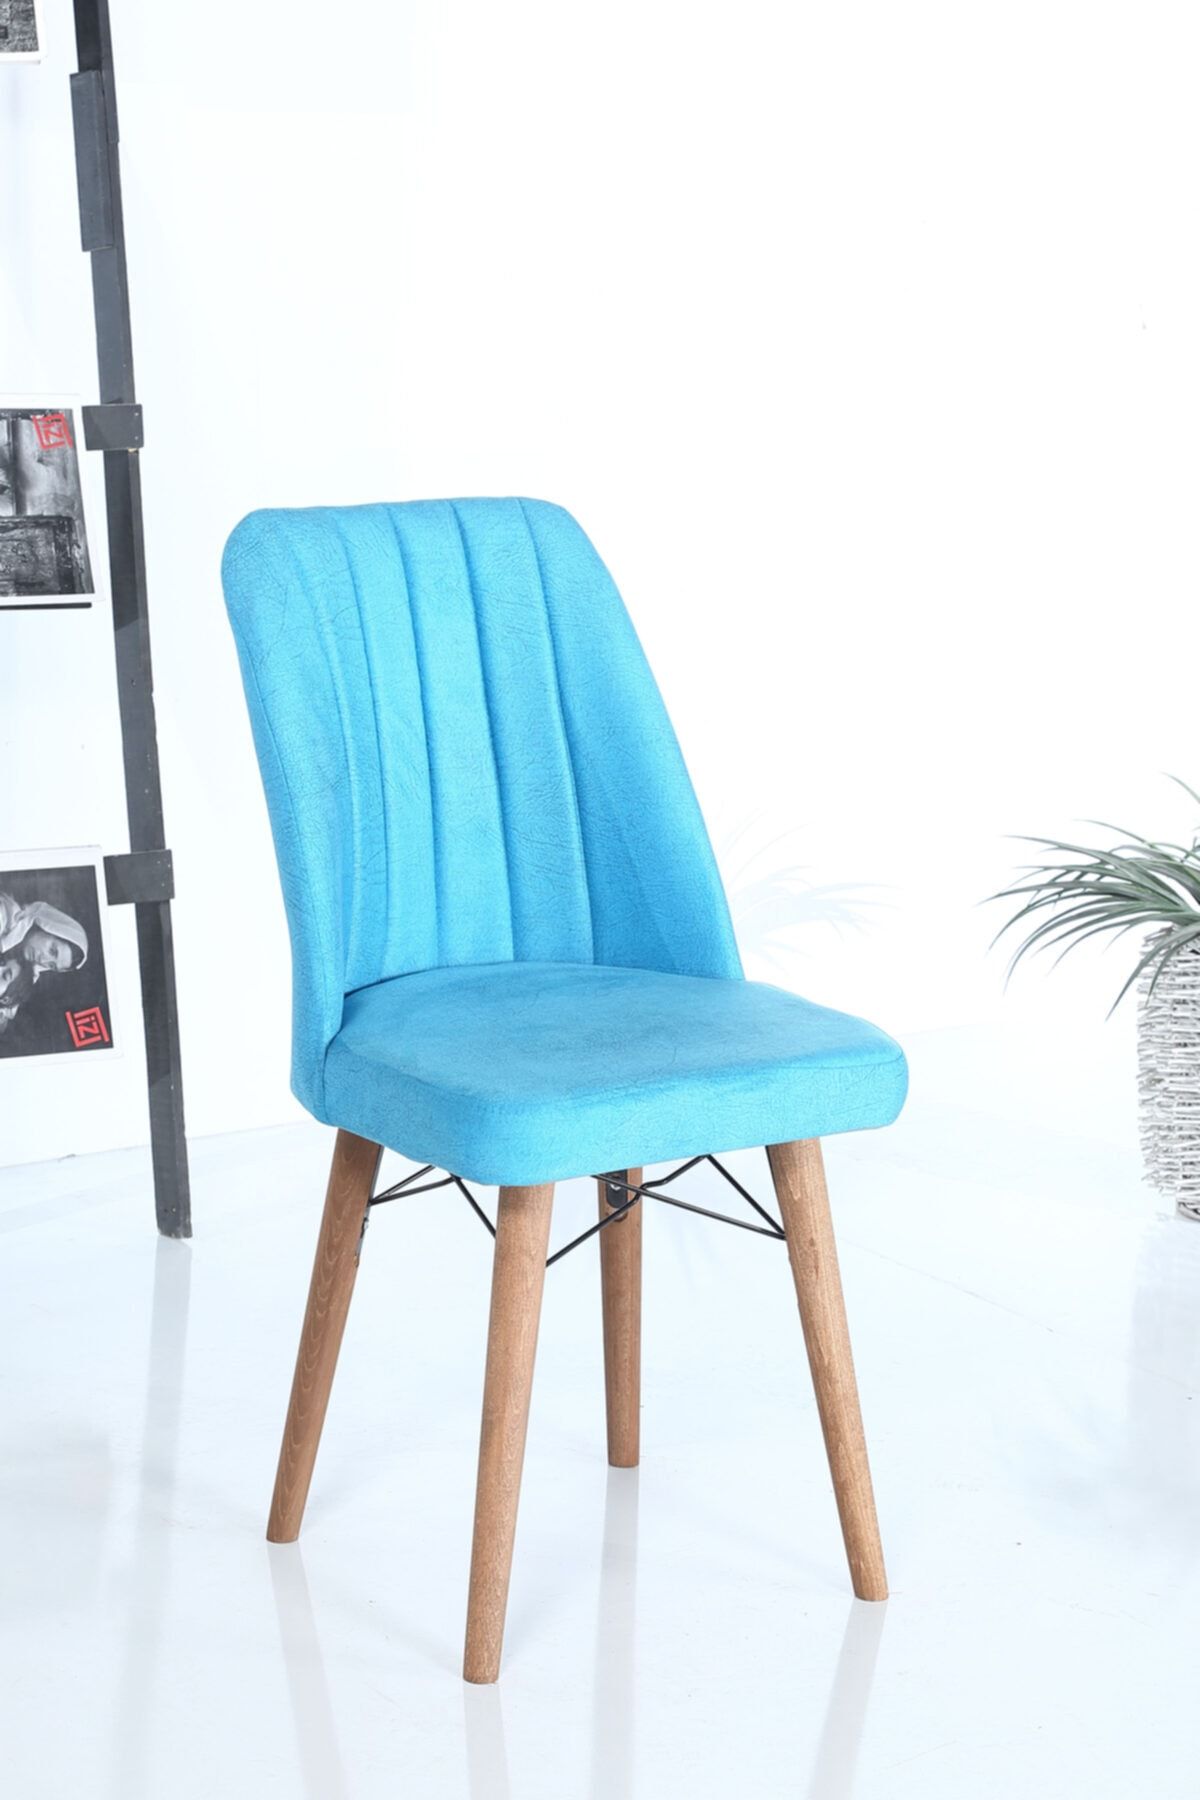 İnjir Home Arthur Serisi 1 Adet Sandalye Mutfak Sandalyesi Yemek Odası Sandalyesi - Turkuaz